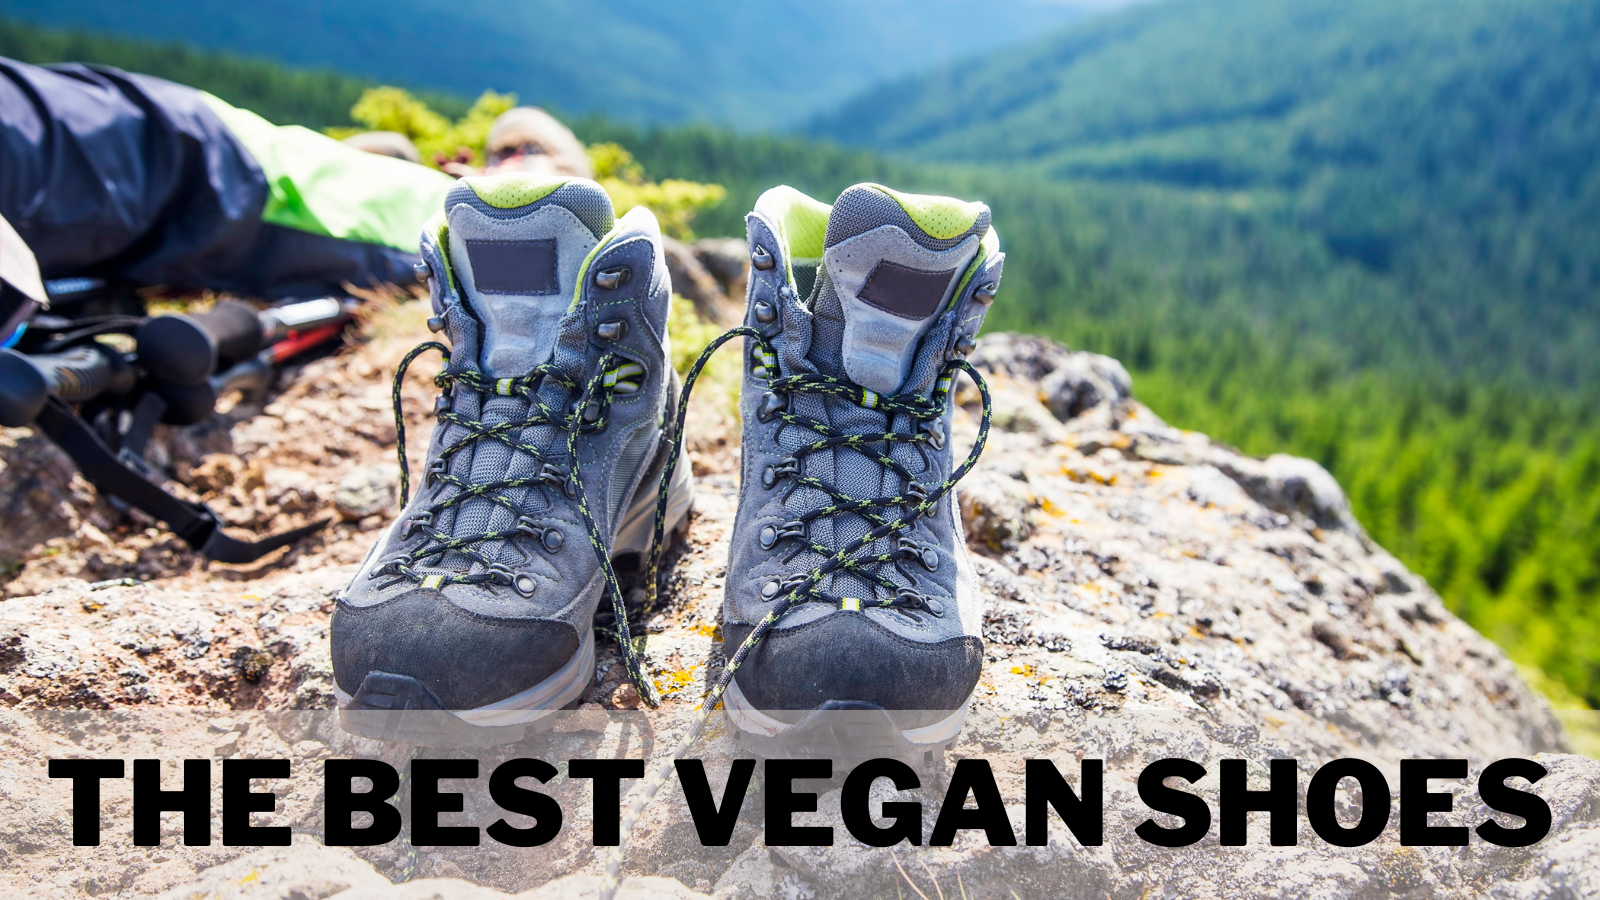 The Best Vegan Shoes